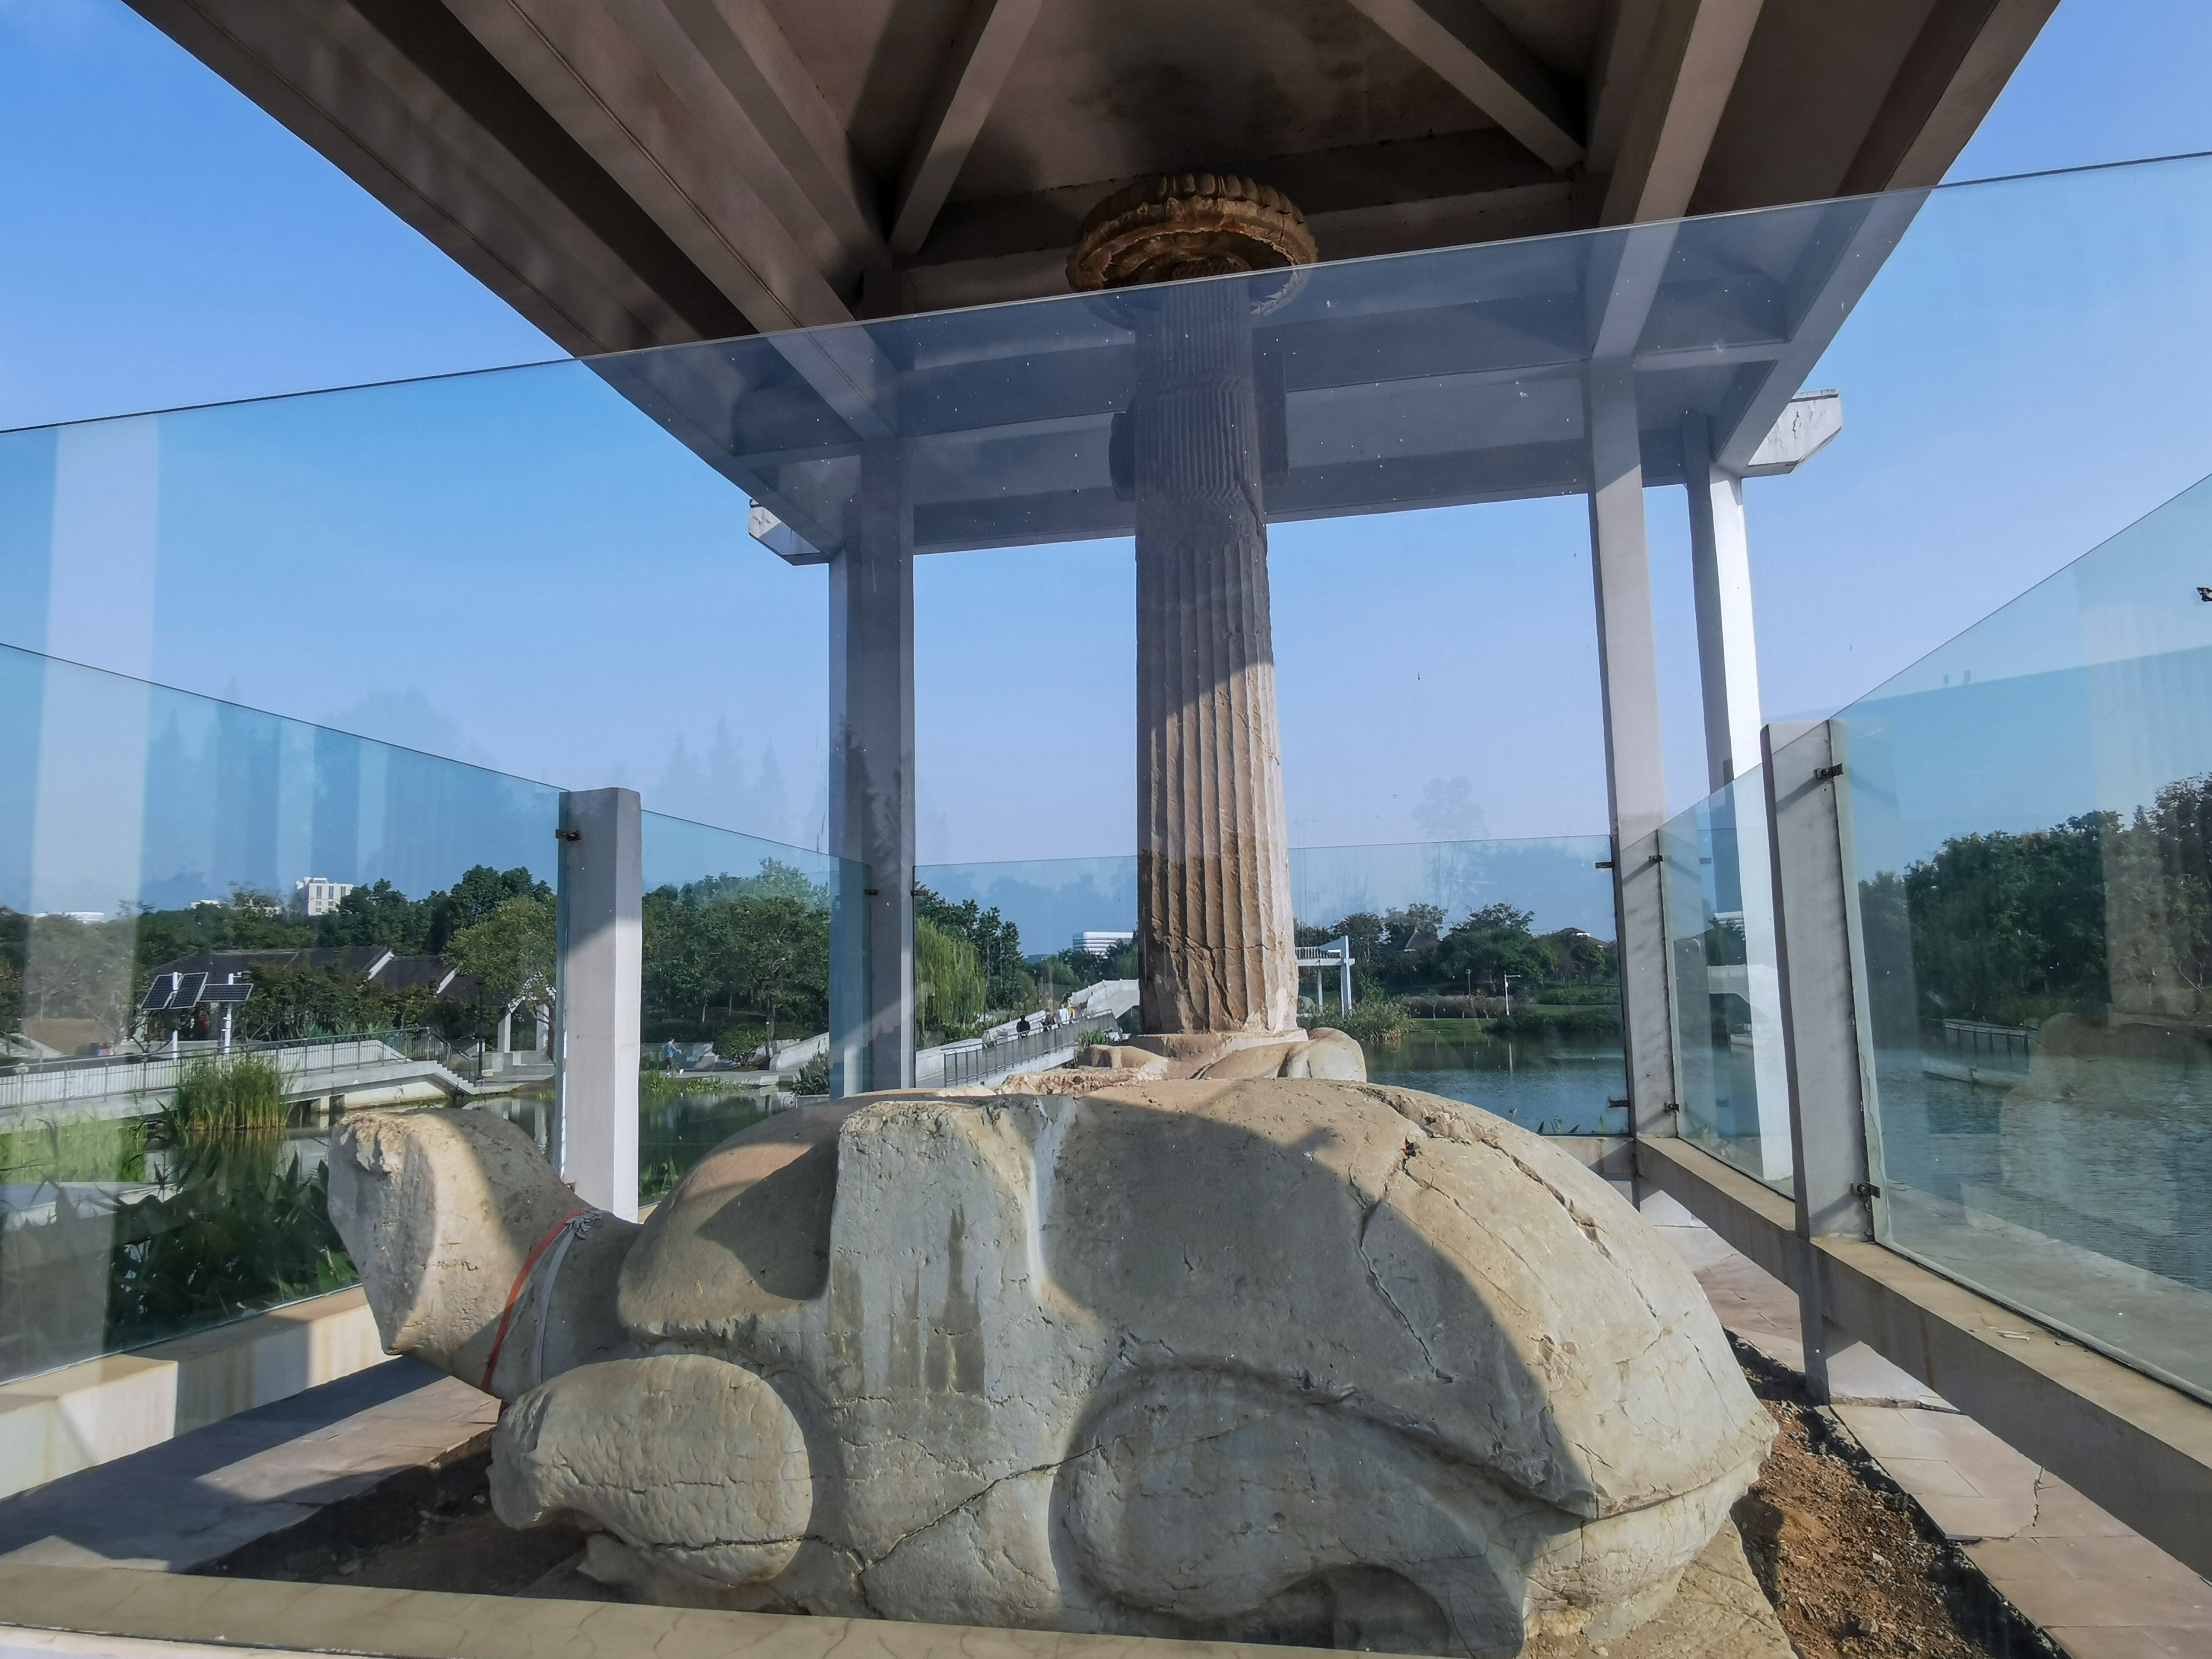 思窝爱旅行的涛哥南京萧宏石刻公园感受1500多年前的石刻艺术